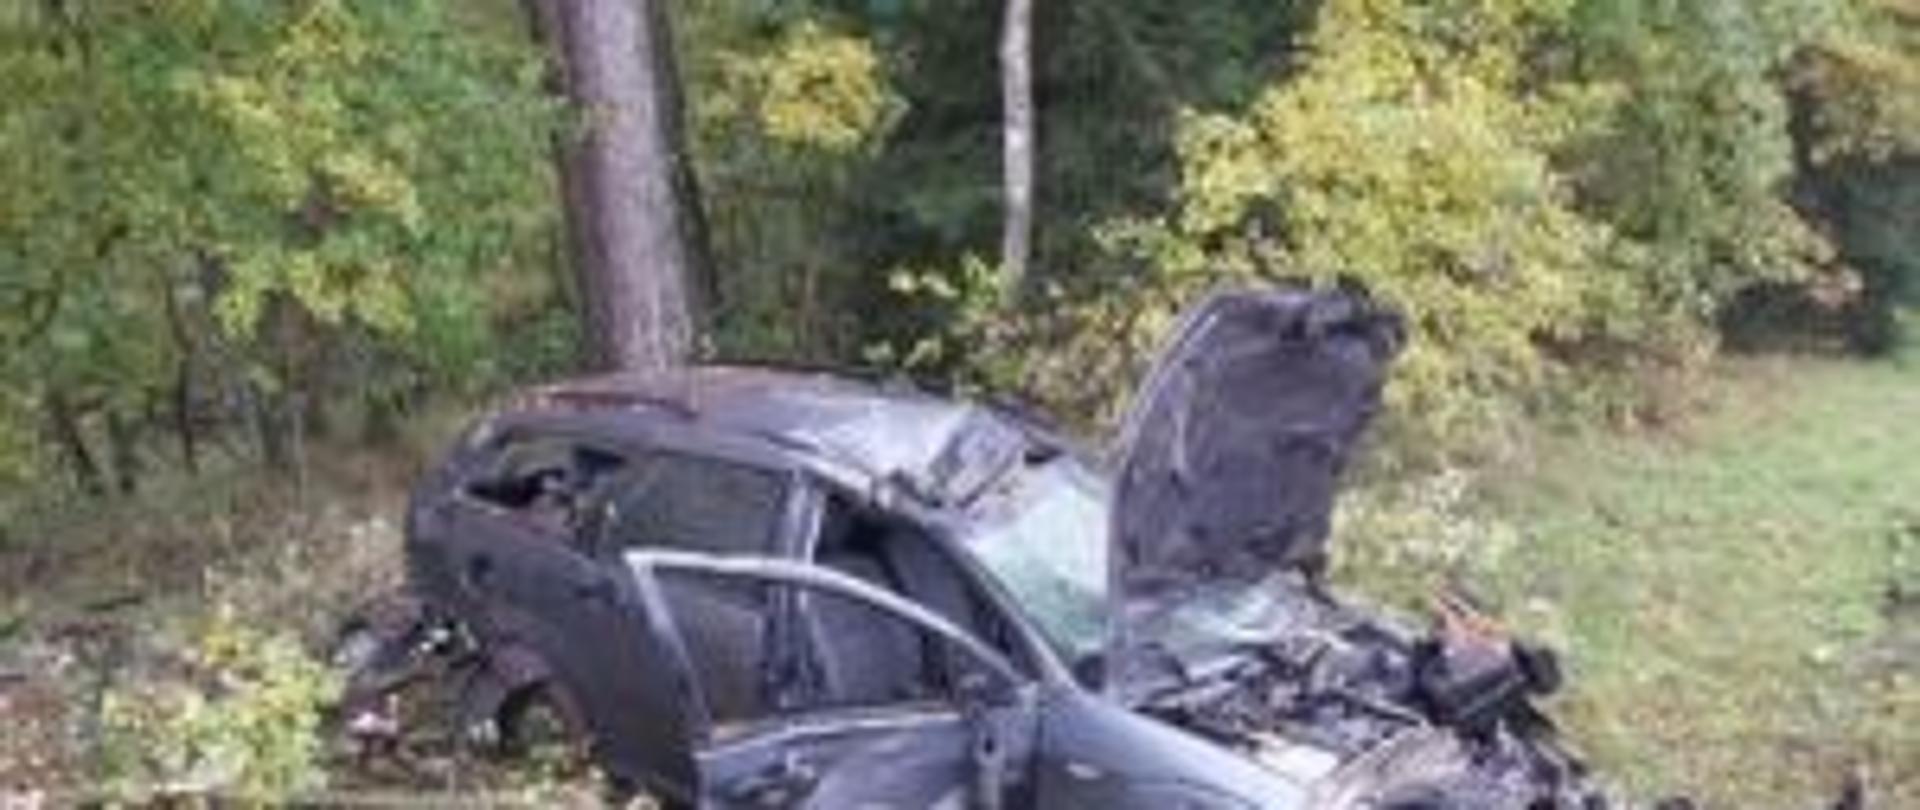 zdjęcie przedstawia wrak rozbitego pojazdu marki Ford